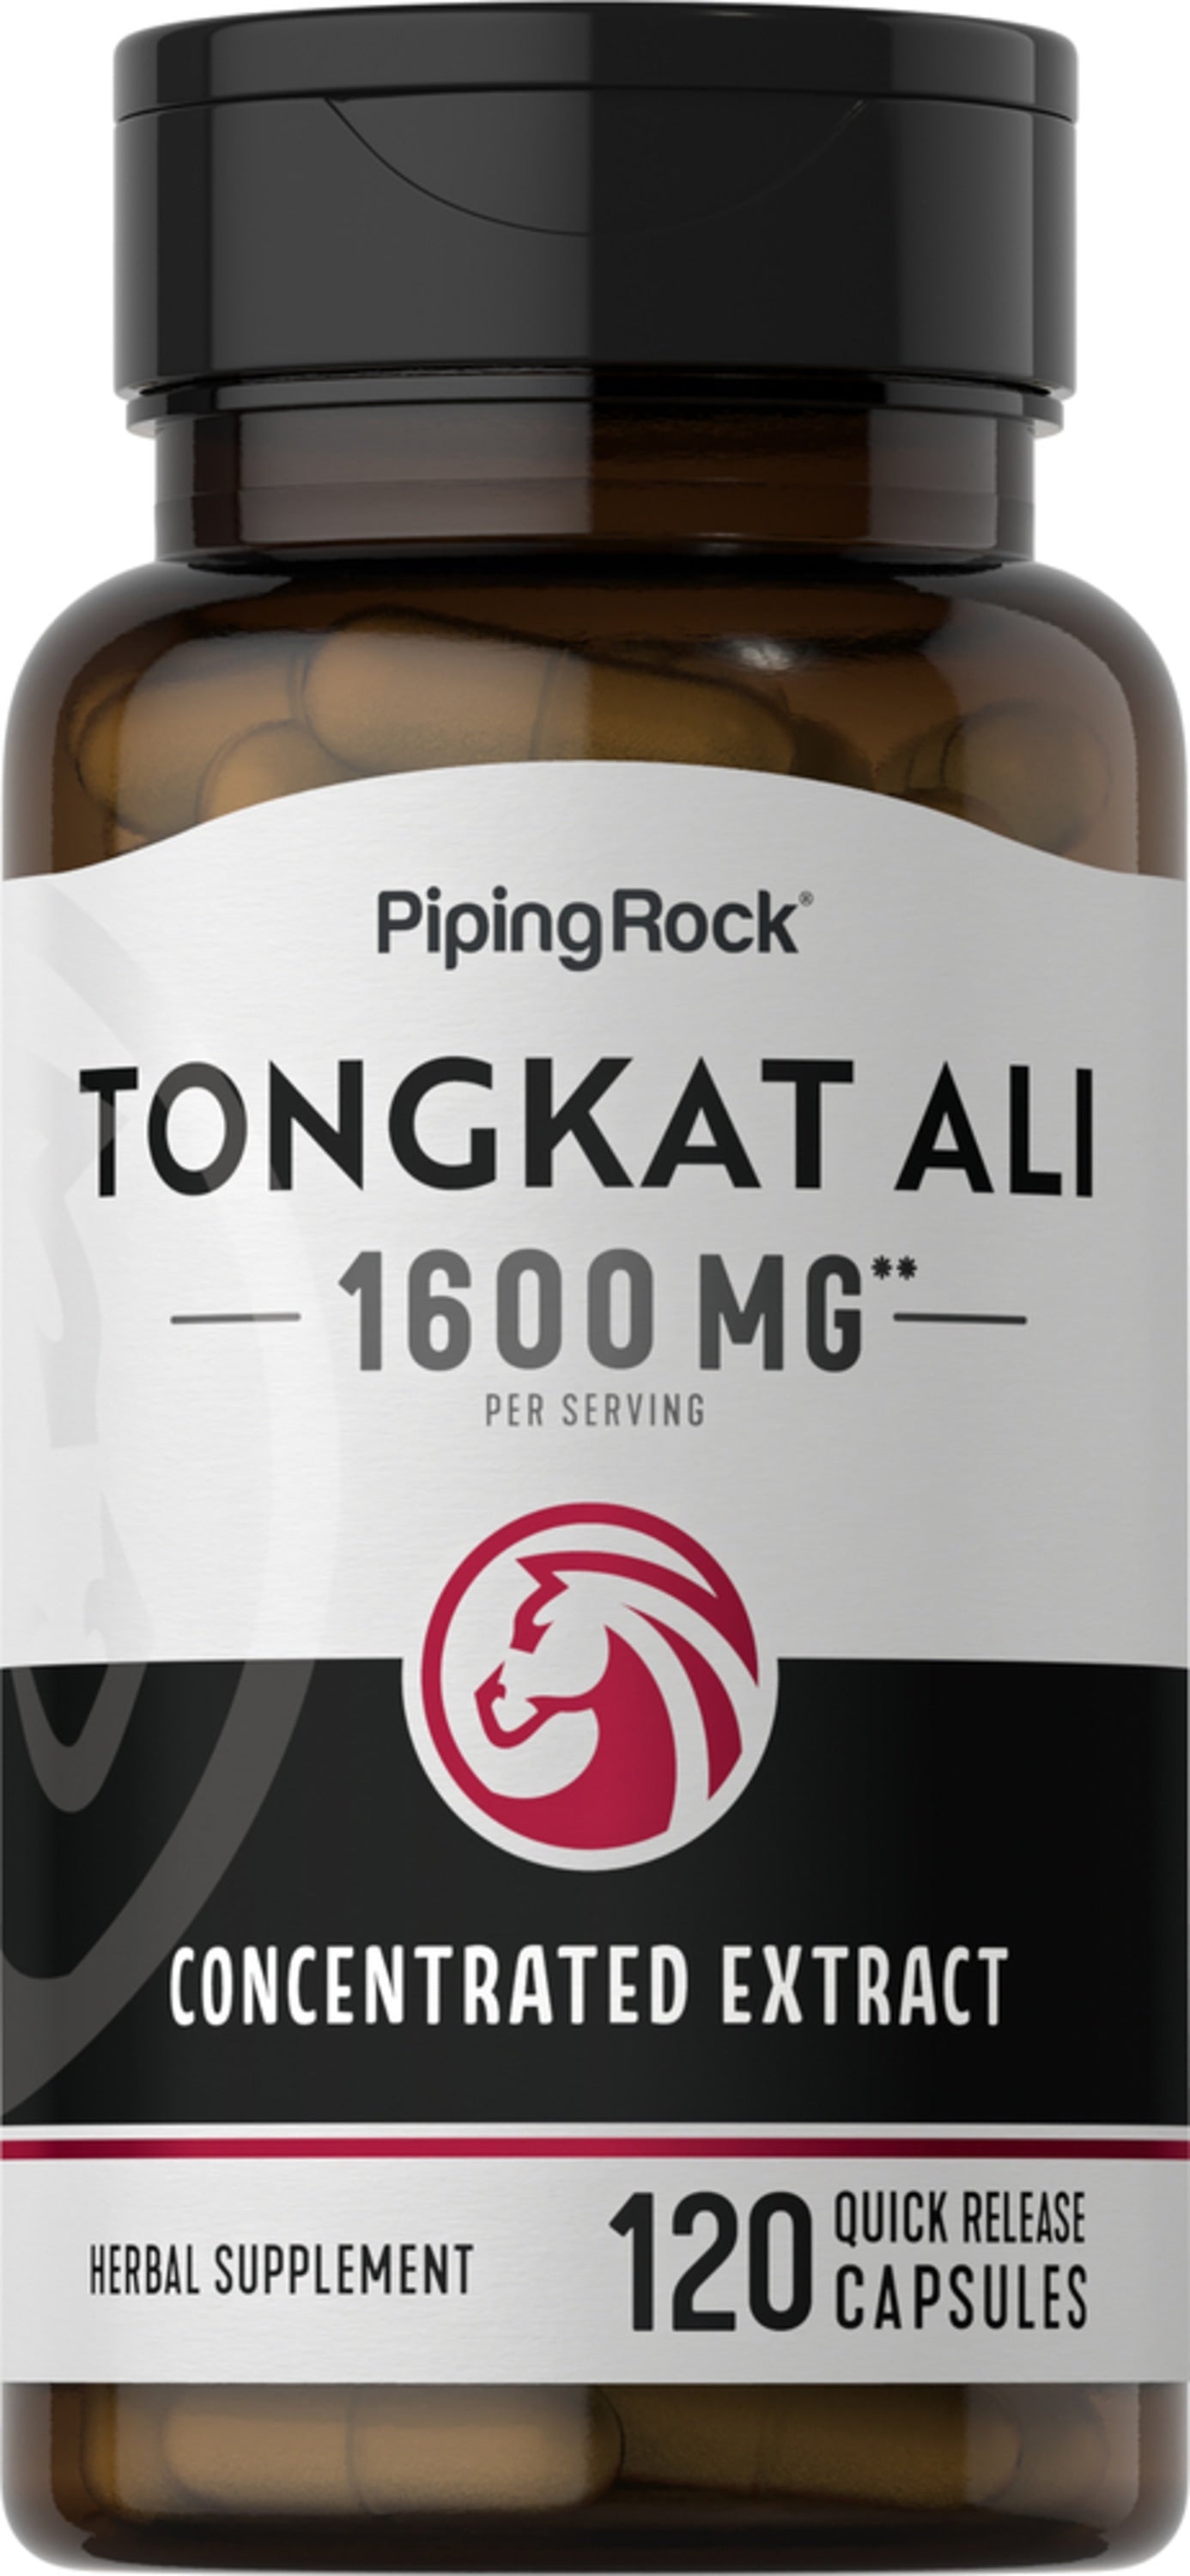 Tongkat Ali Long Jack, 1600 mg (per serving), 120 Quick Release Capsules